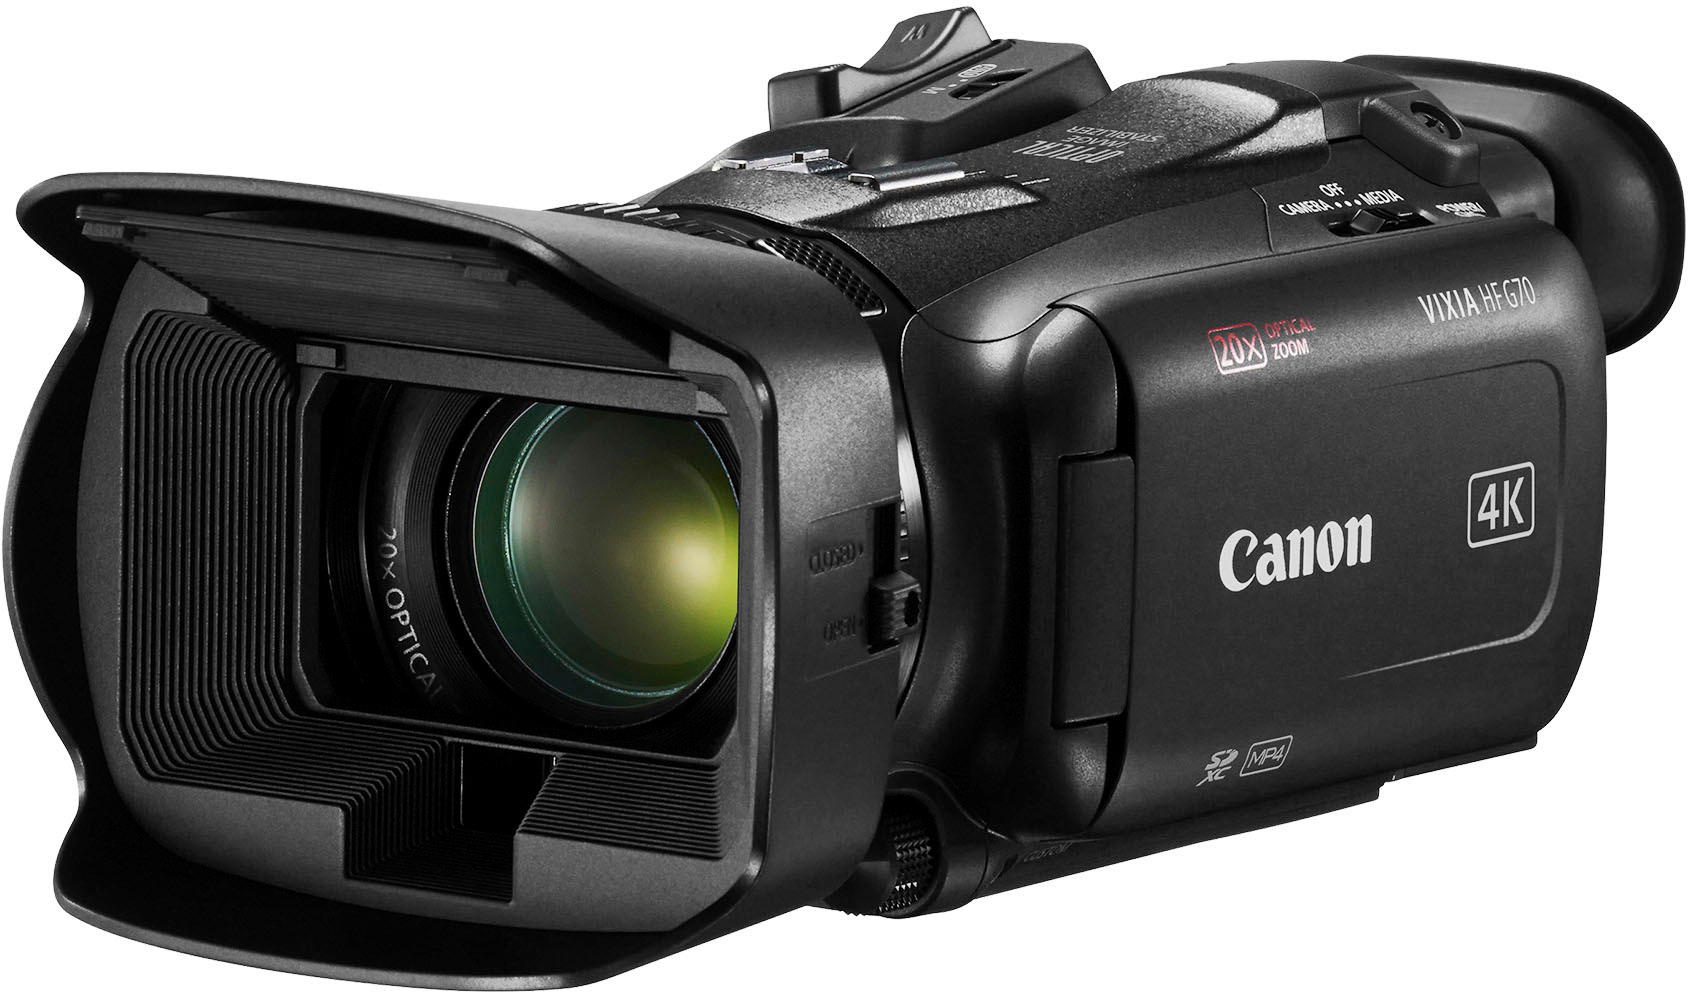 Angle View: Canon - VIXIA HF G70 4K - Black